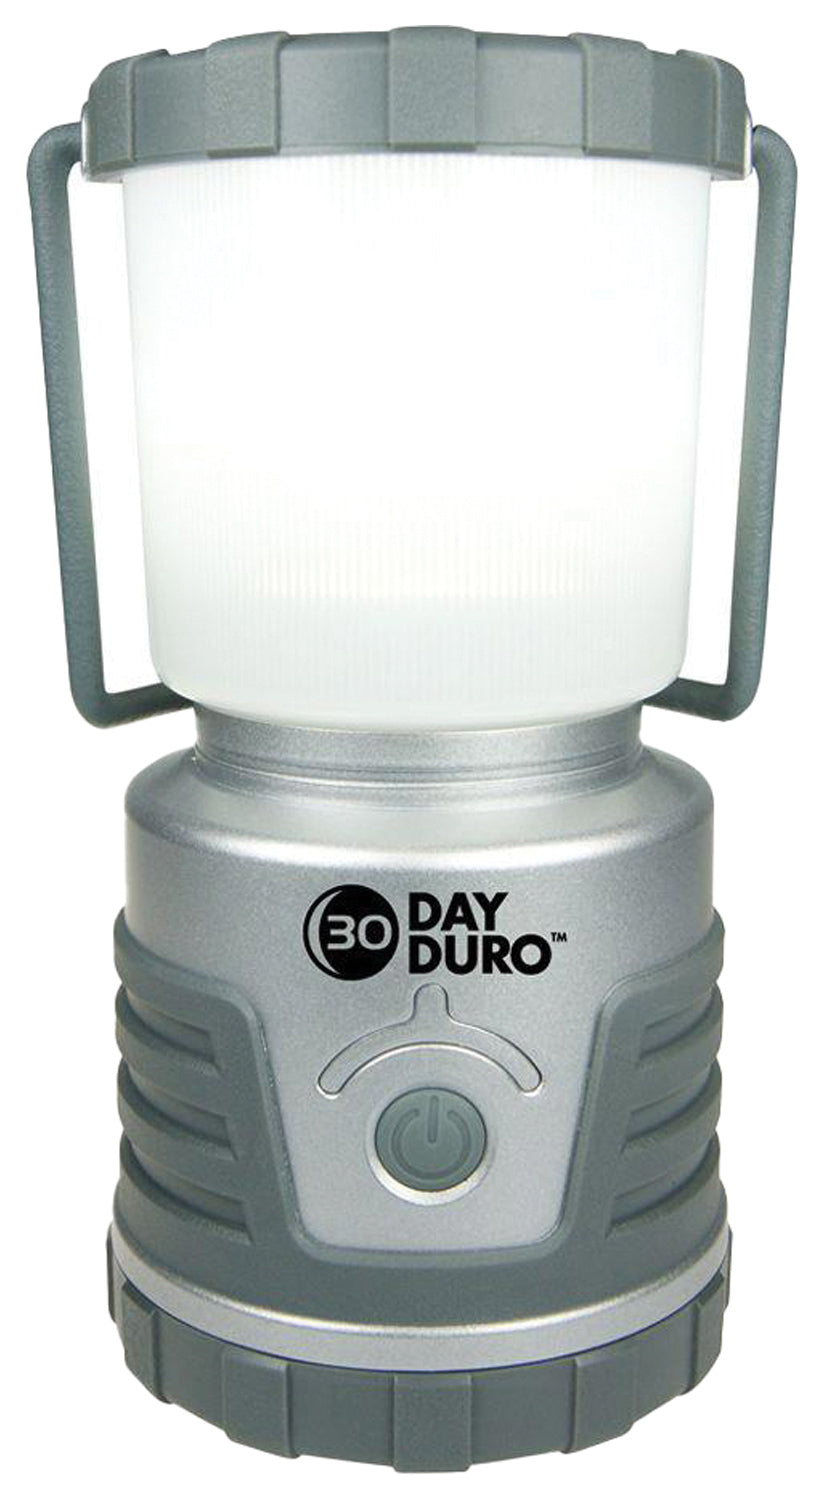 Ust 30 Day Duro Lantern